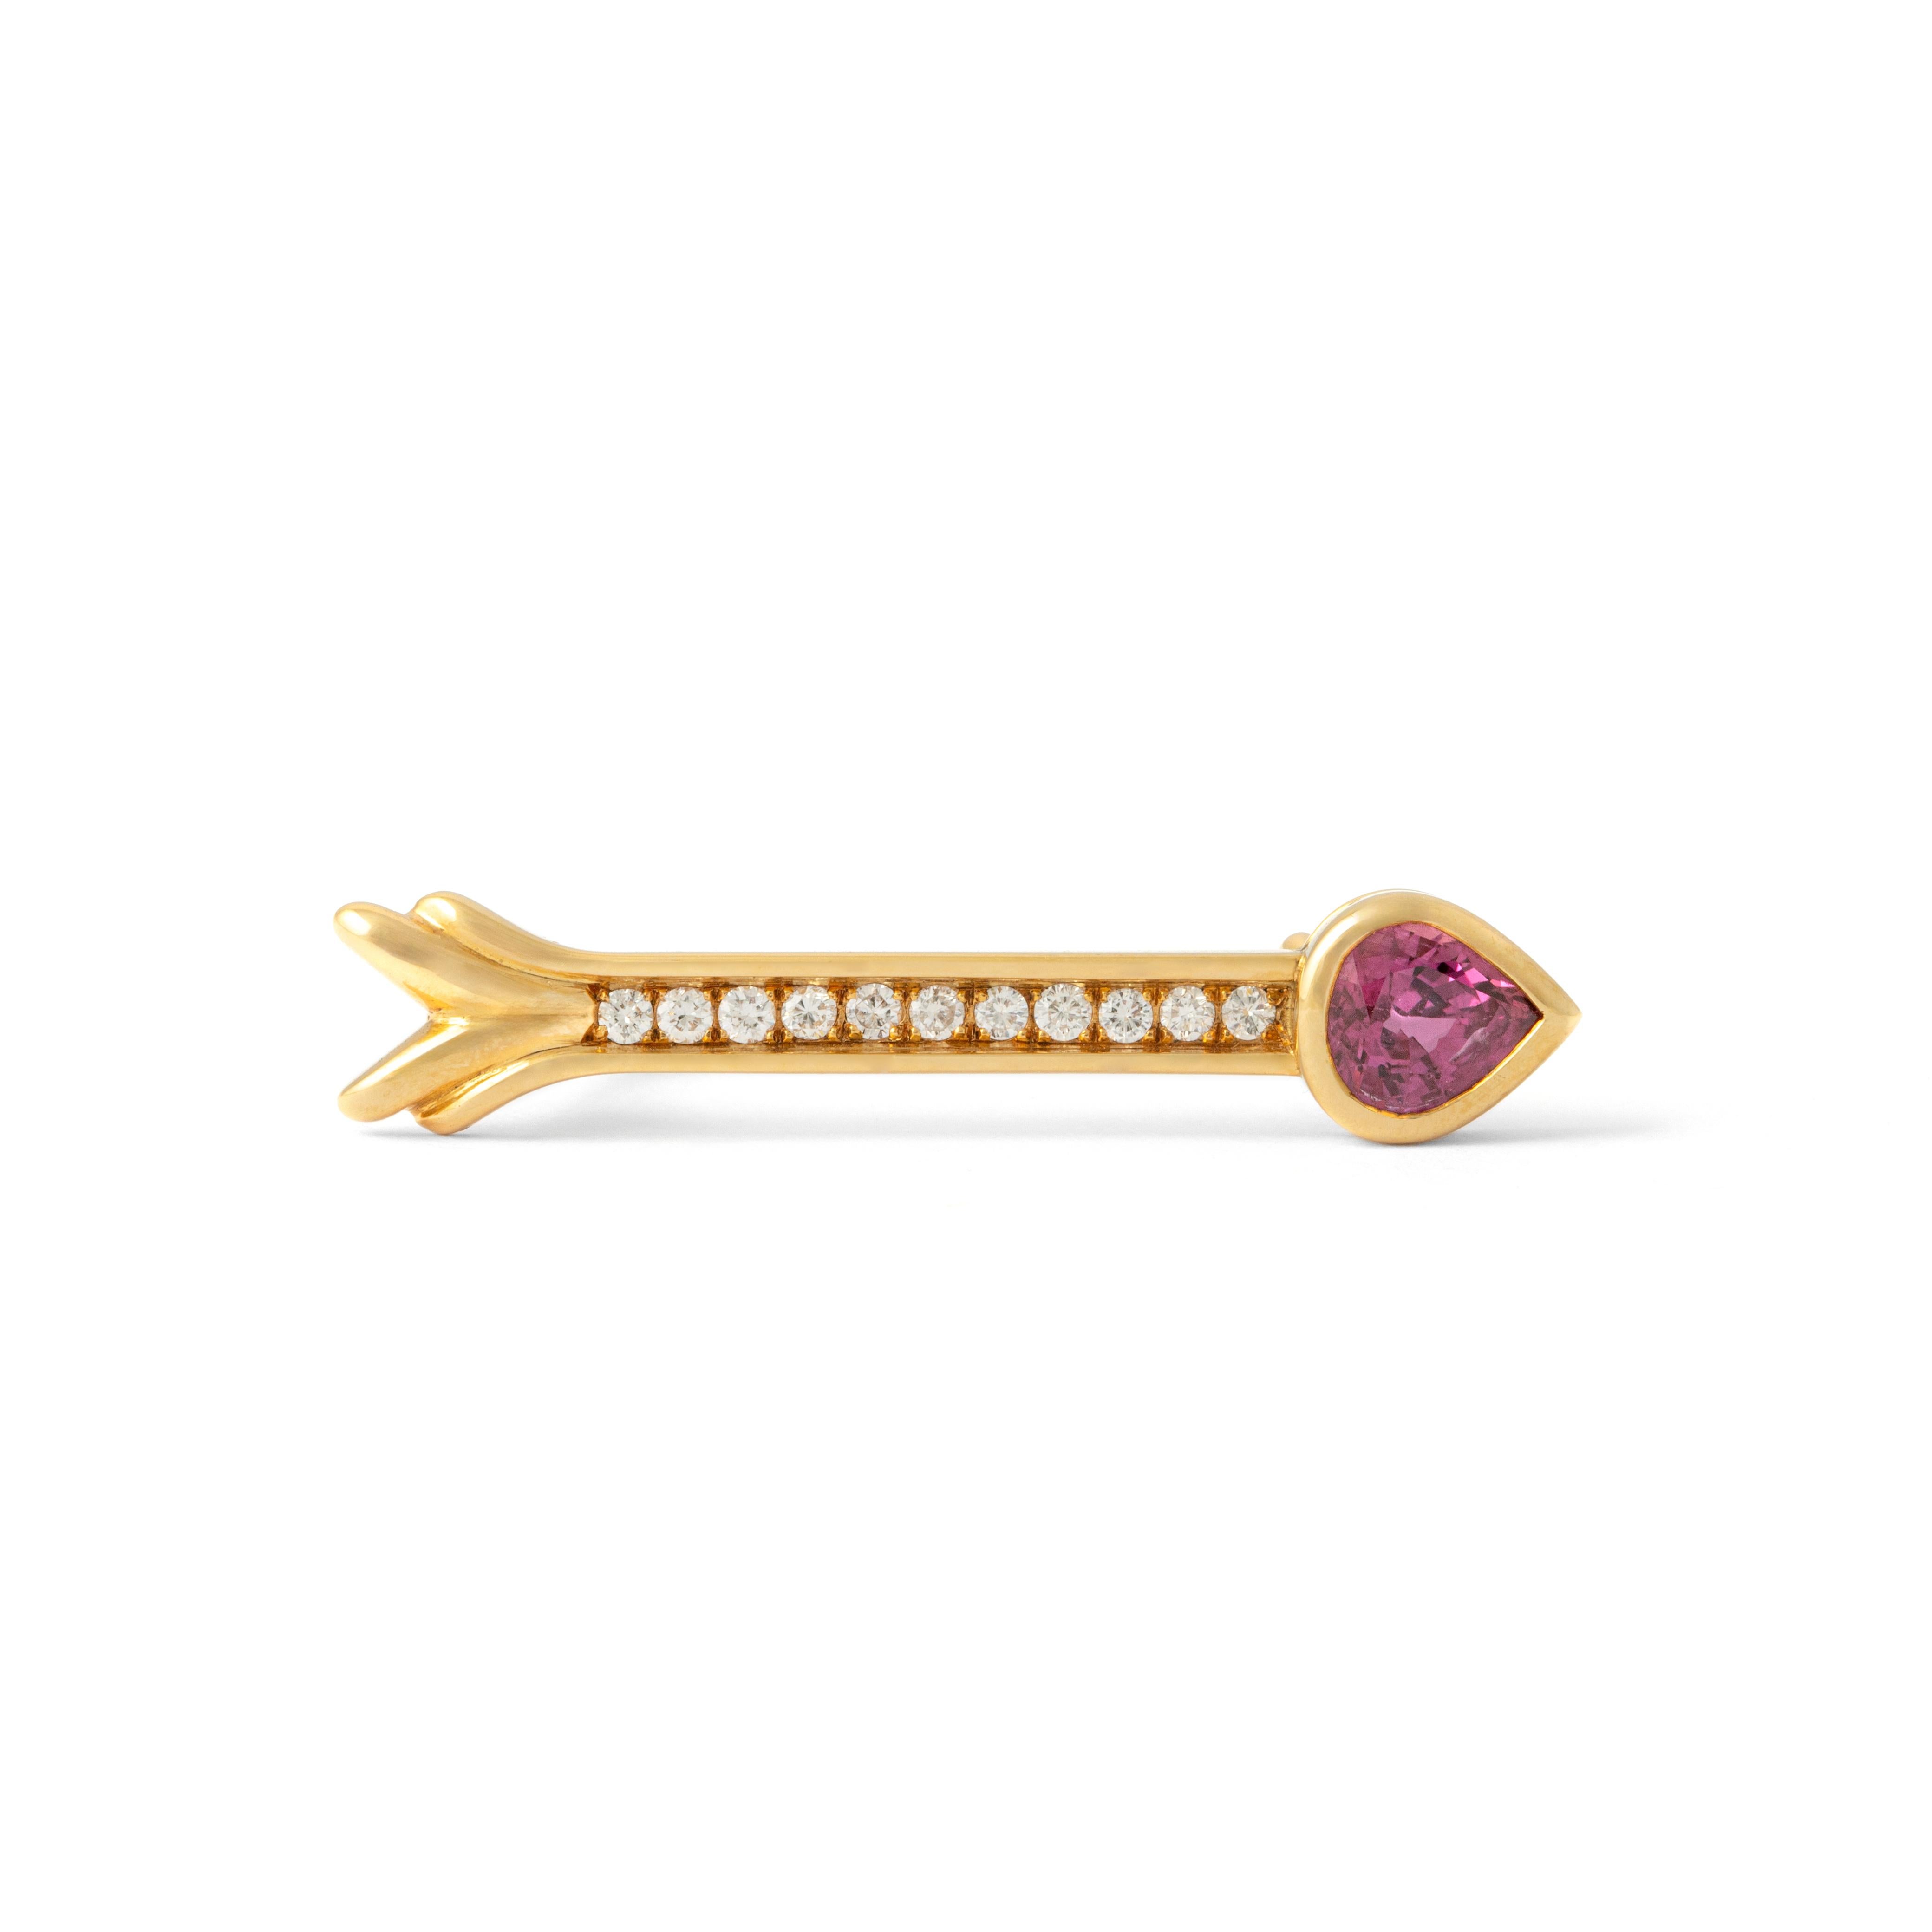 La broche Arrow en or jaune 18 carats et diamant rubis est un symbole d'élégance et de précision. Réalisée avec un art méticuleux, cette broche est ornée d'un rubis vibrant de 1,26 carat, exhalant la passion et l'intensité.

La hampe de la flèche